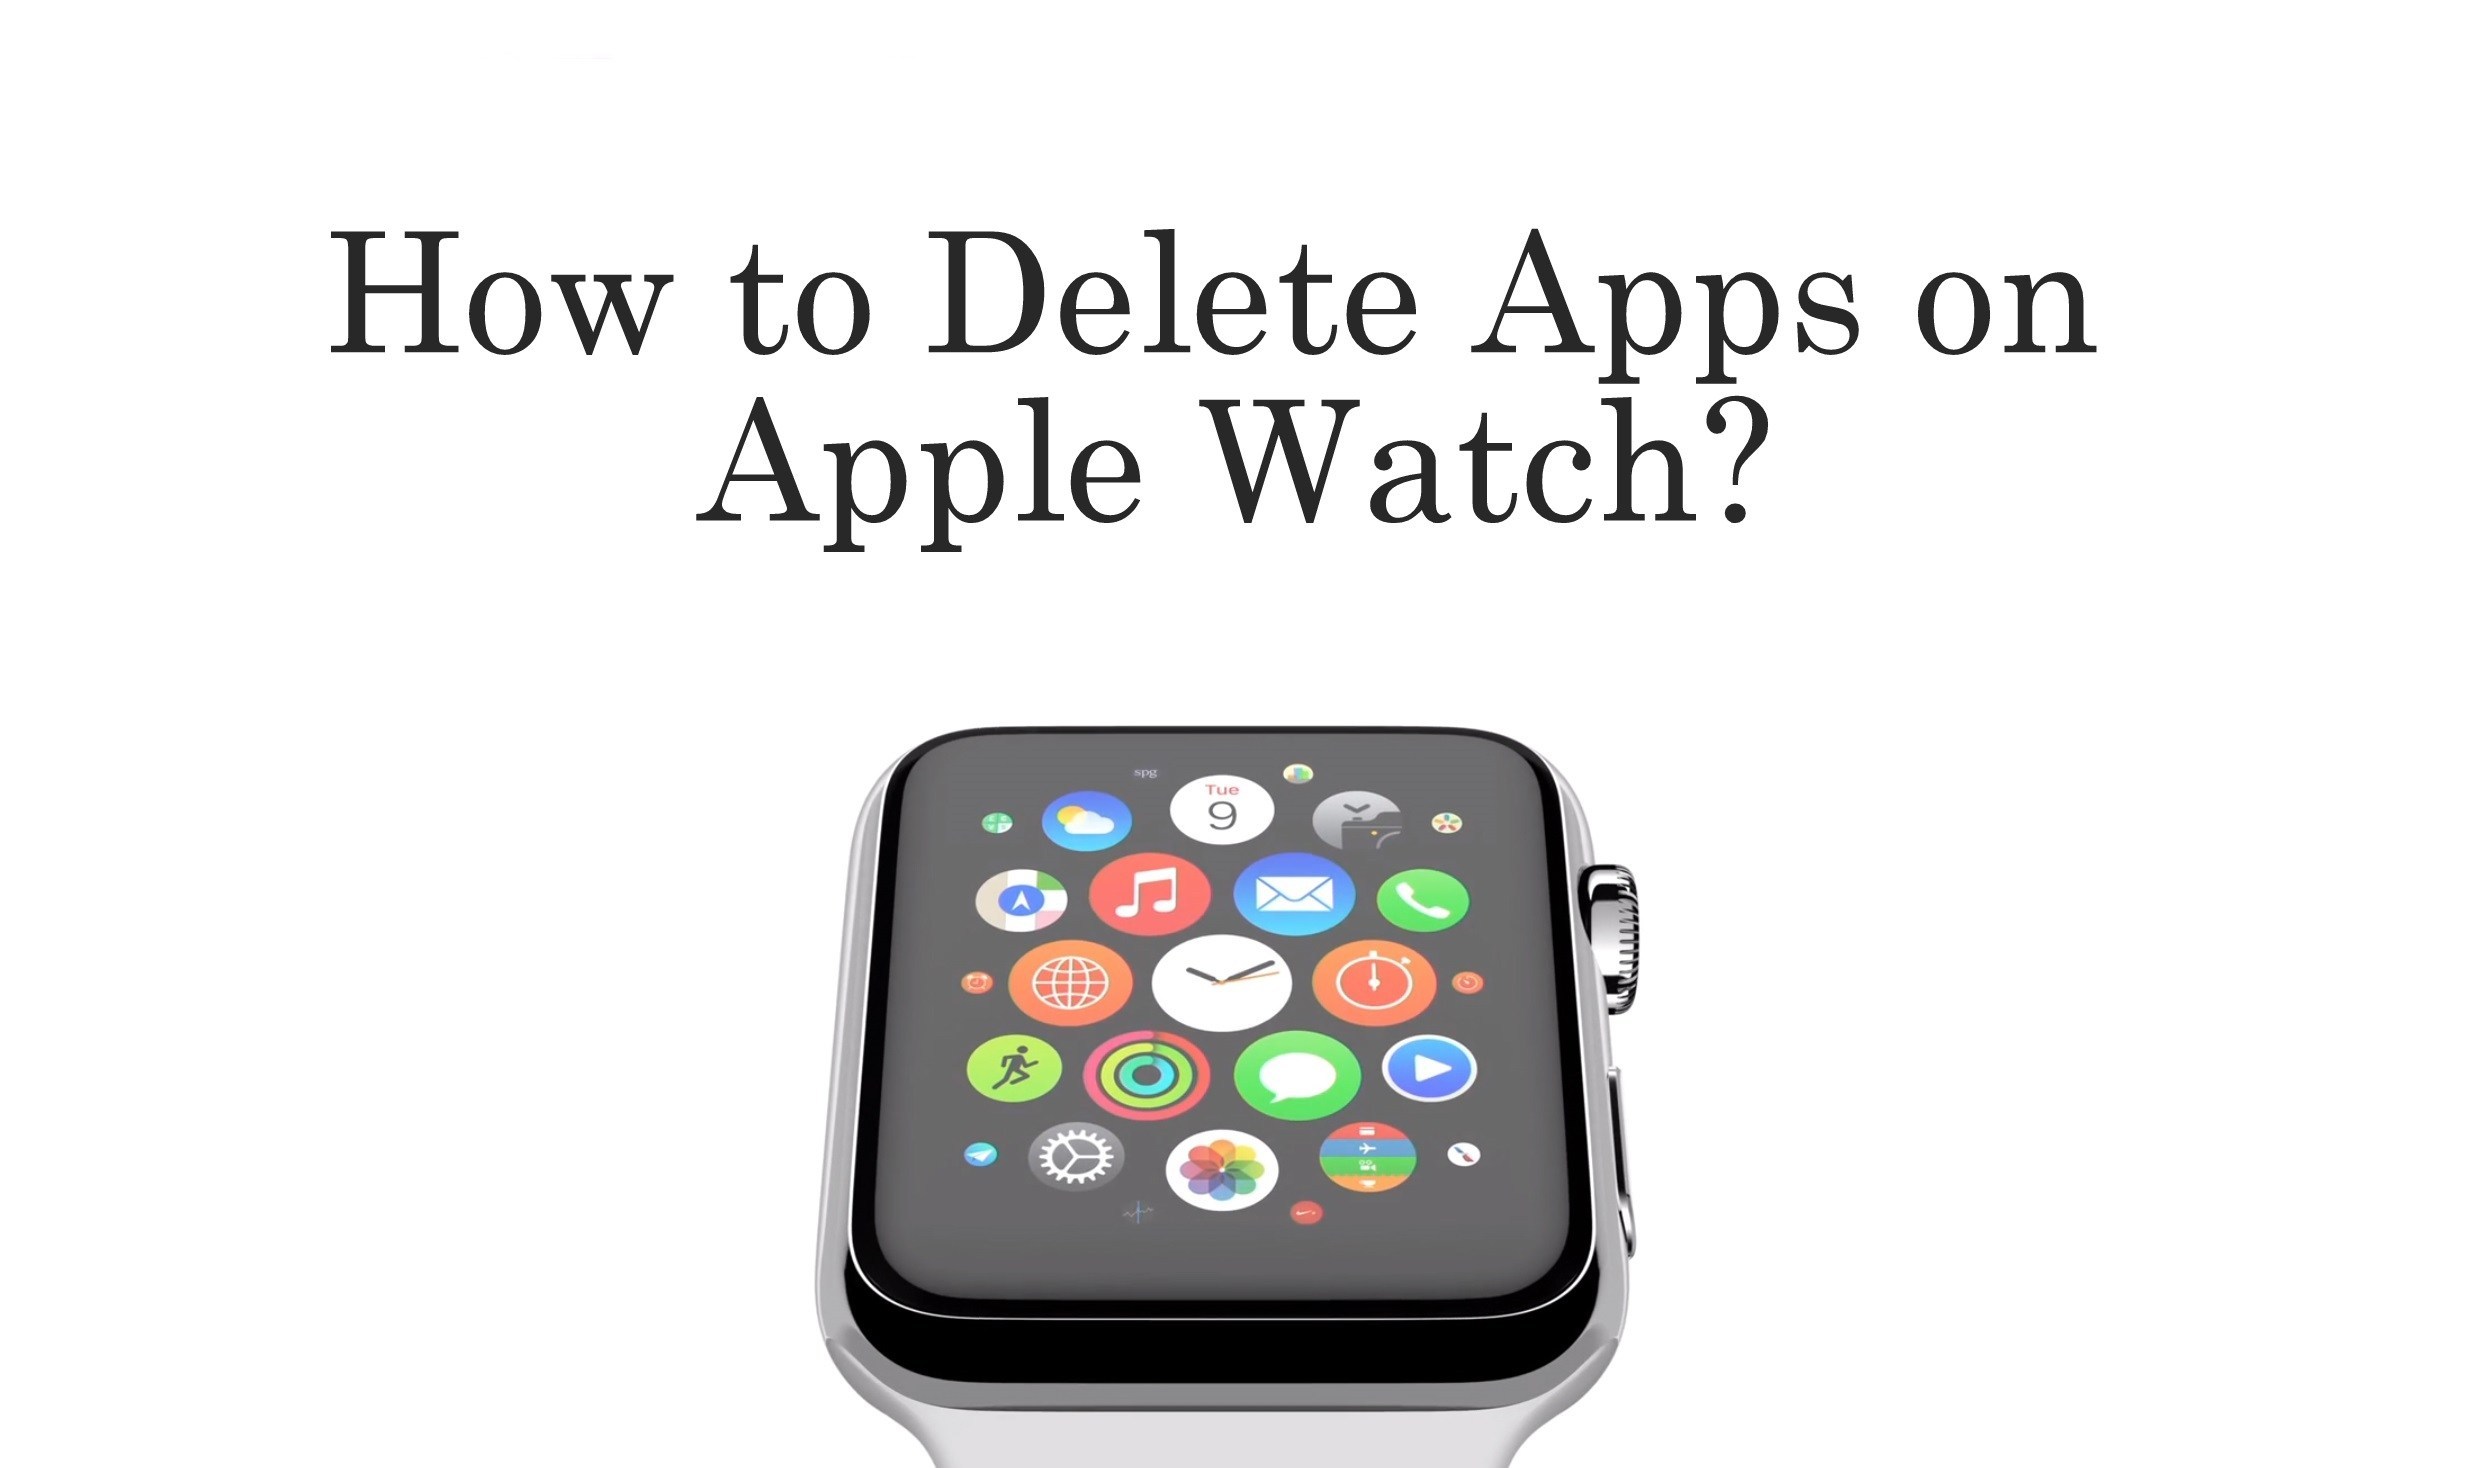 Nola ezabatu aplikazioak Apple Watch [2 Methods]
